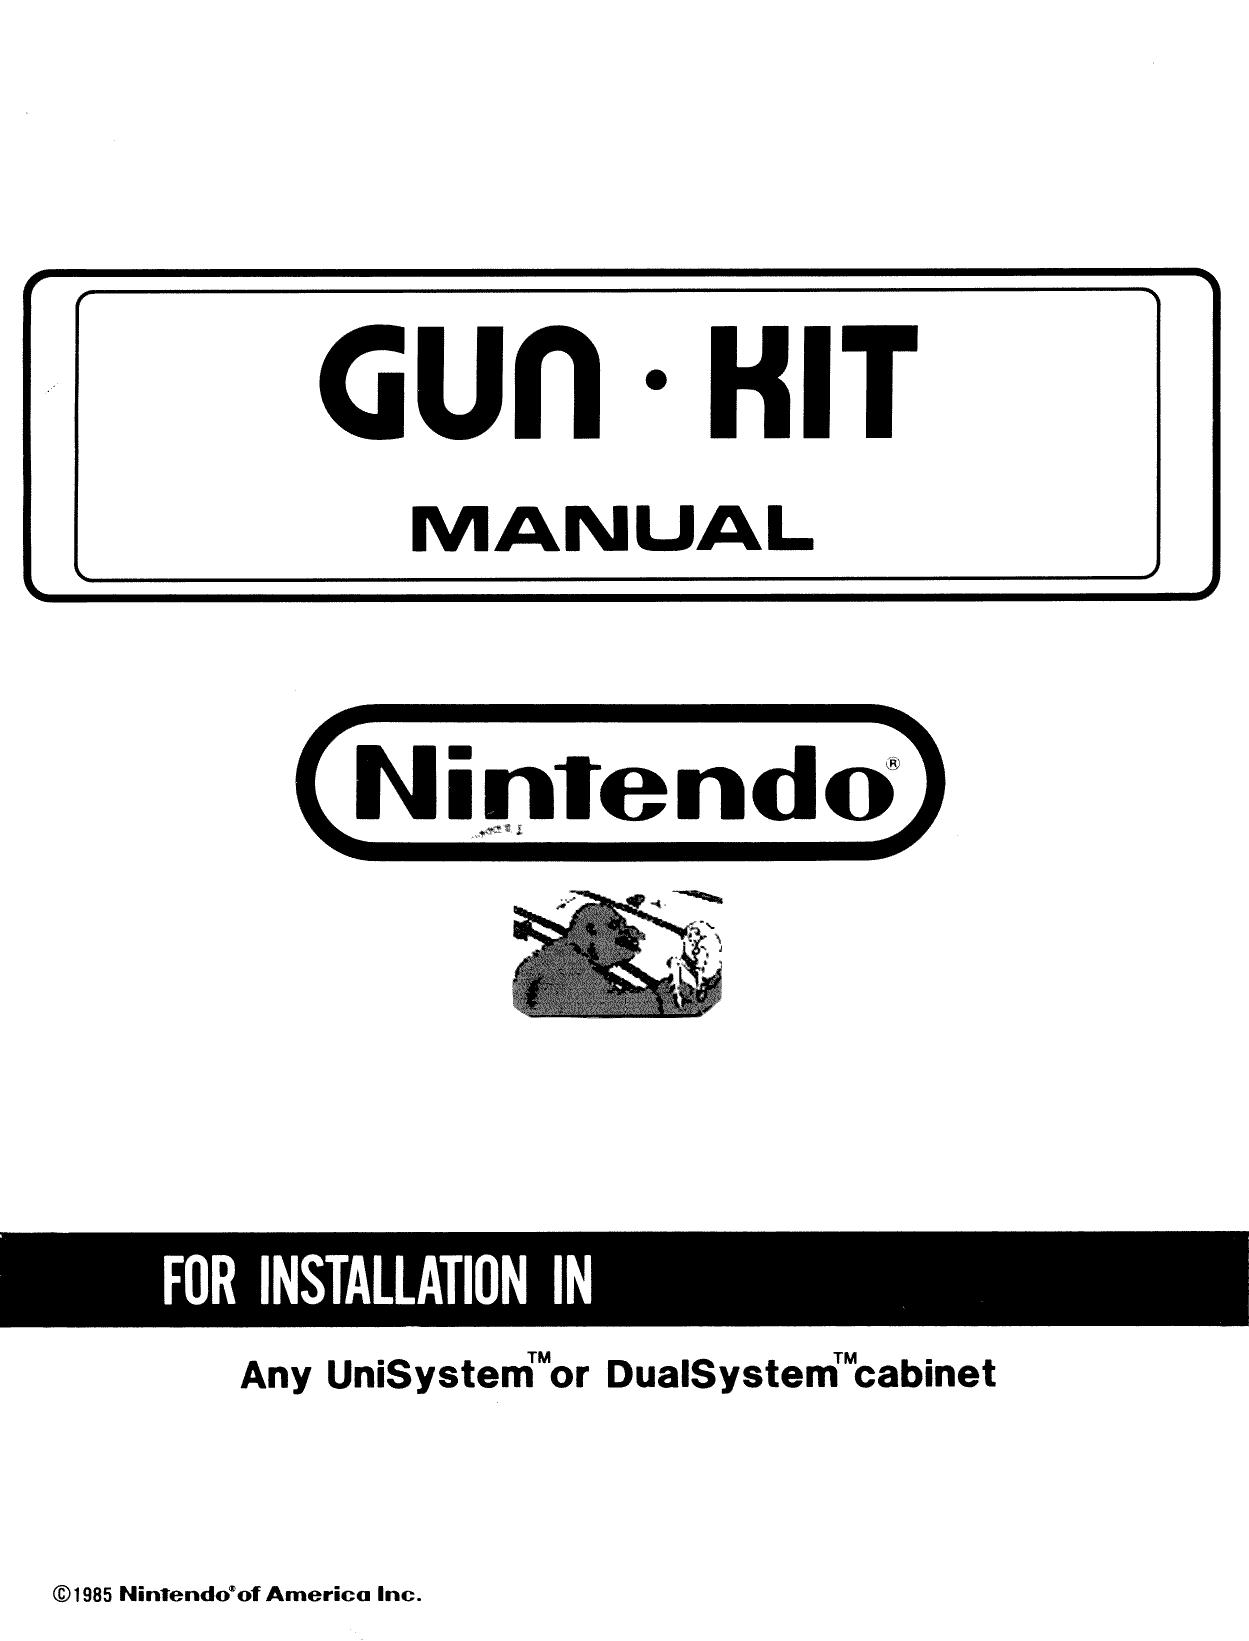 NintendoGunKit Manual